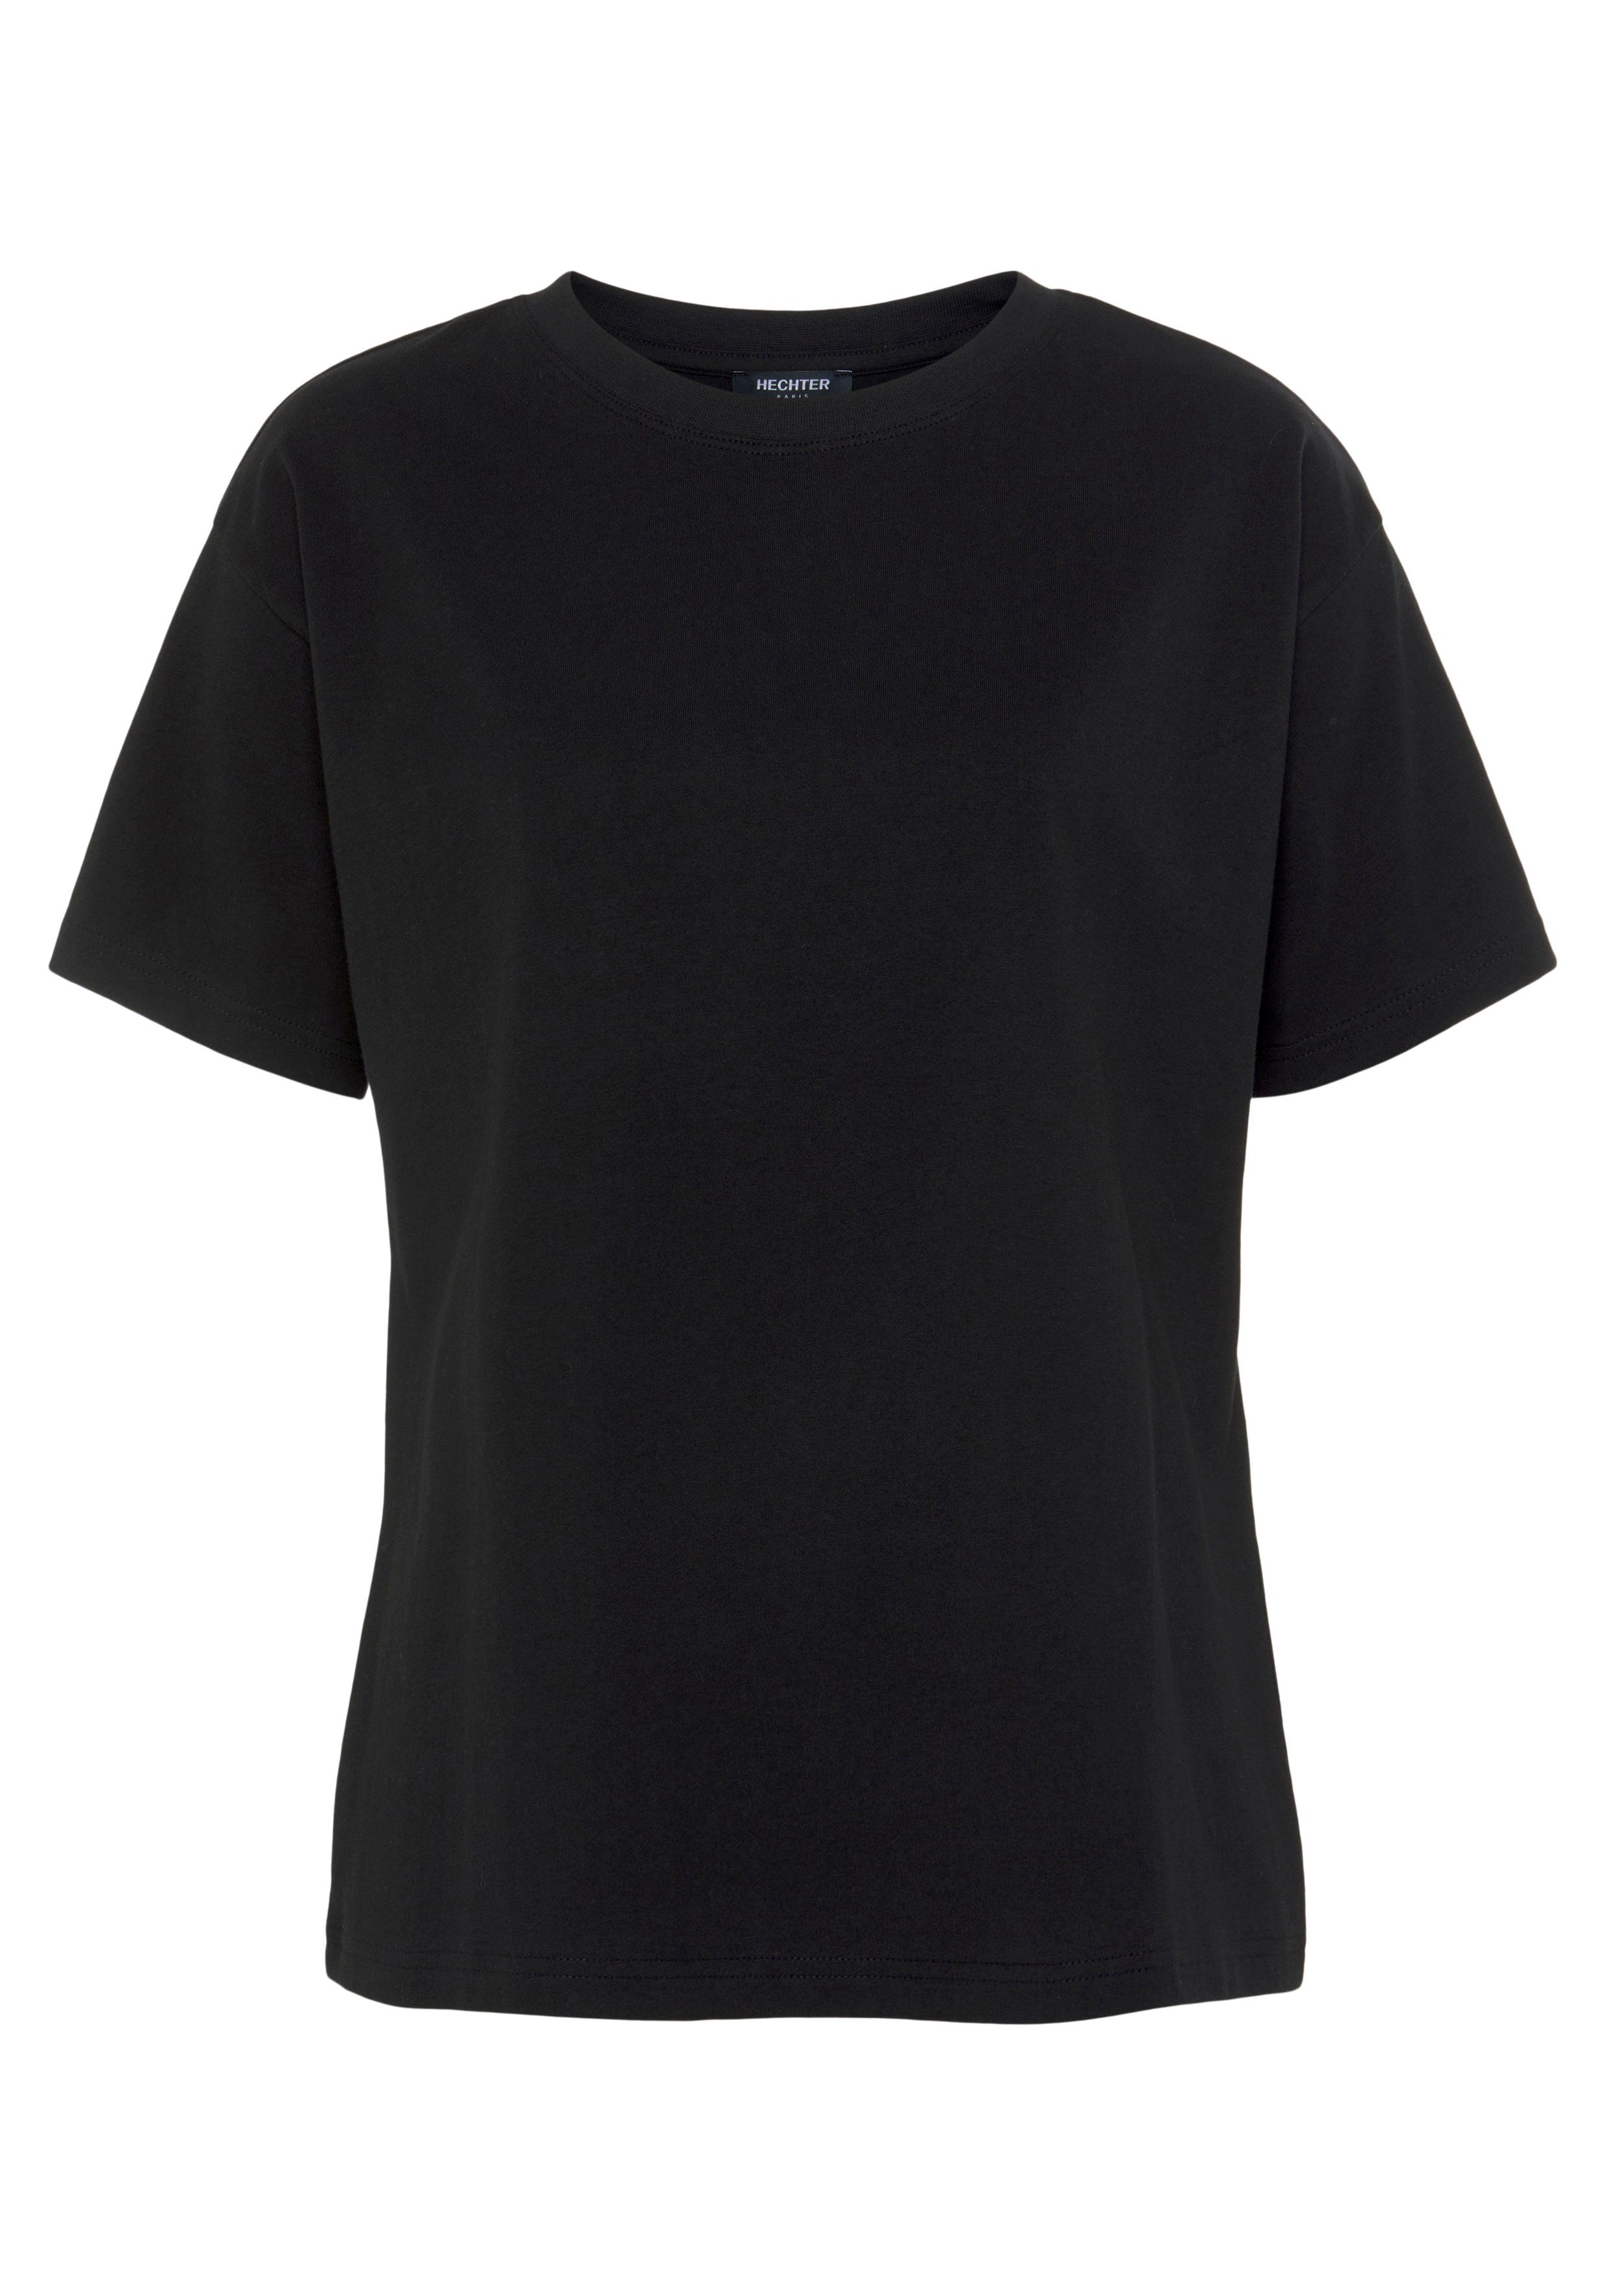 PARIS mit T-Shirt schwarz HECHTER Rundhalsausschnitt